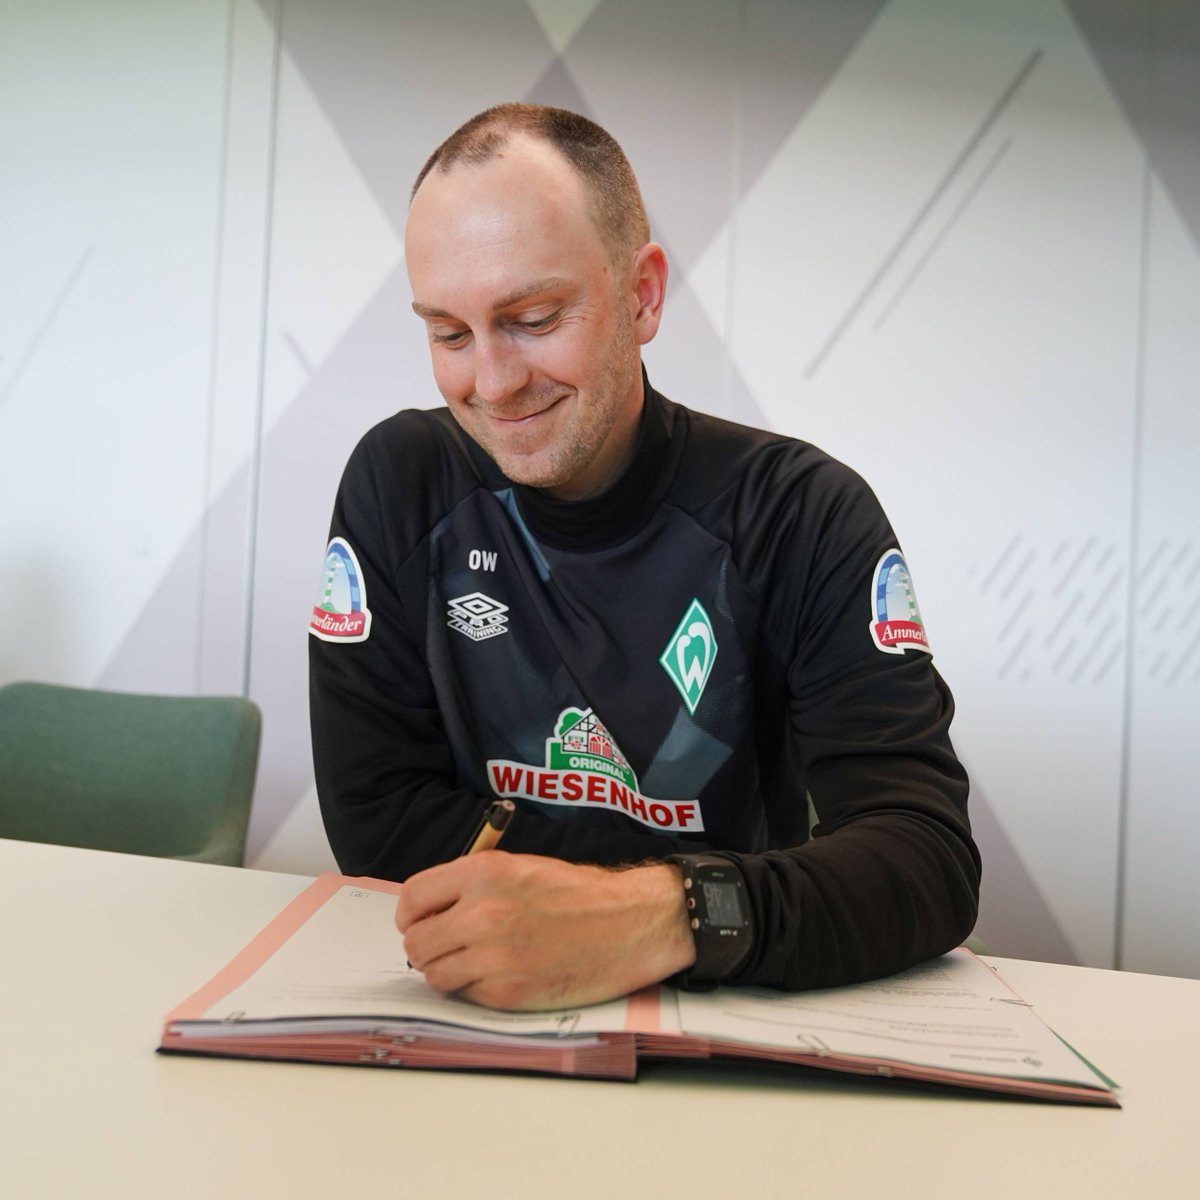 Cheftrainer Ole #Werner verlängert seinen Vertrag beim SV Werder vorzeitig. 🤝

Wir freuen uns sehr auf die weitere Zusammenarbeit, Ole! 😊

Alle Infos & Stimmen 👉 svw.de/VVLWerner23

#Werner